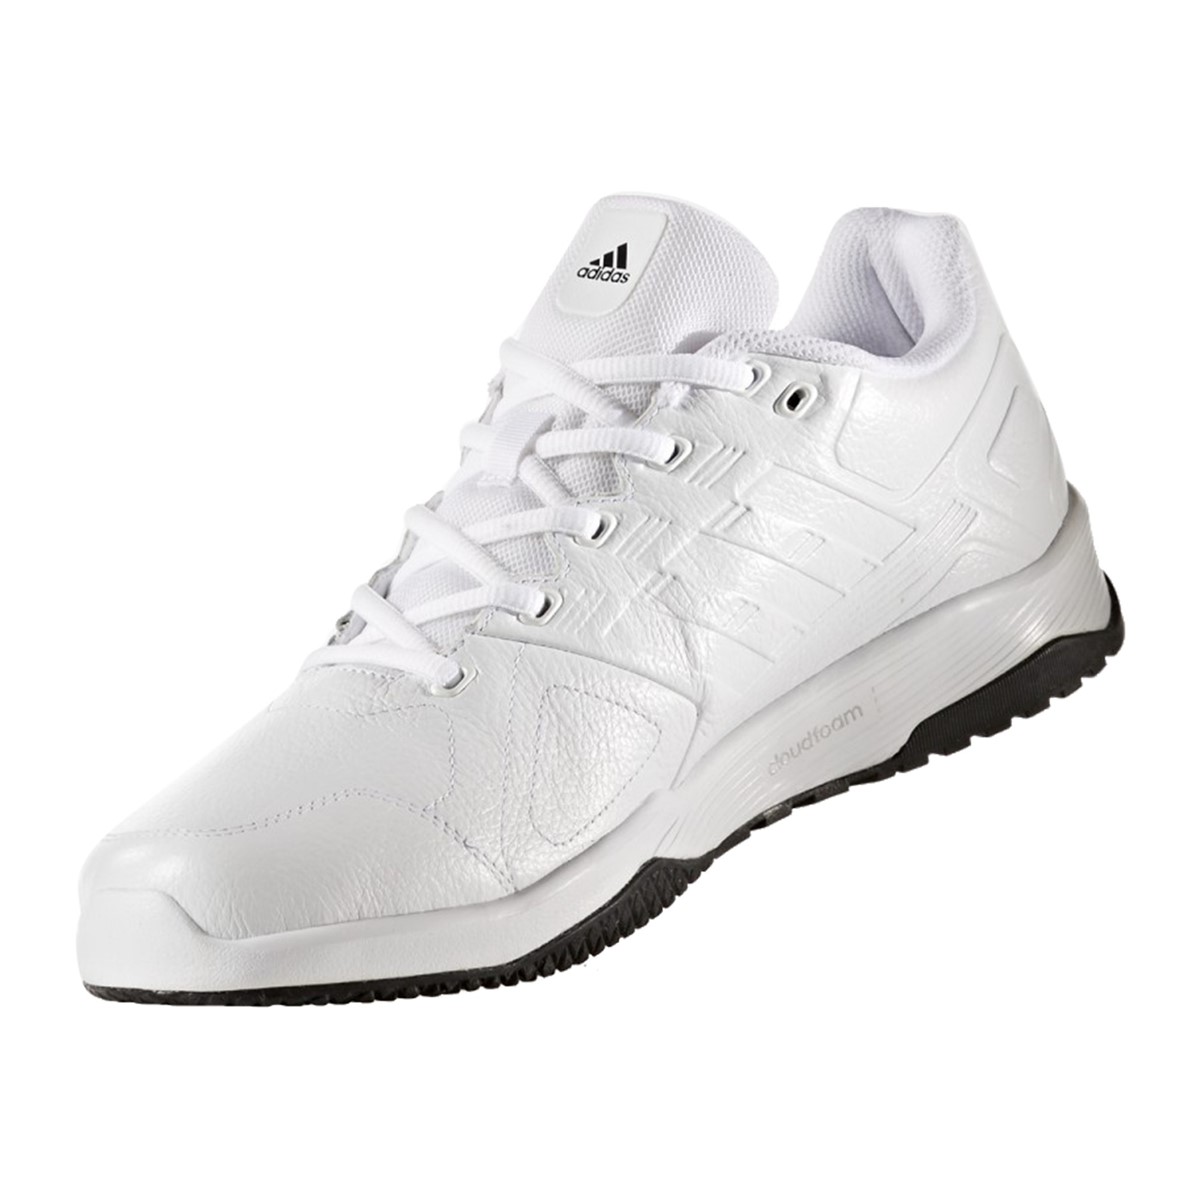 adidas Duramo 8 Leather Beyaz Koşu Ayakkabısı (BB3217)